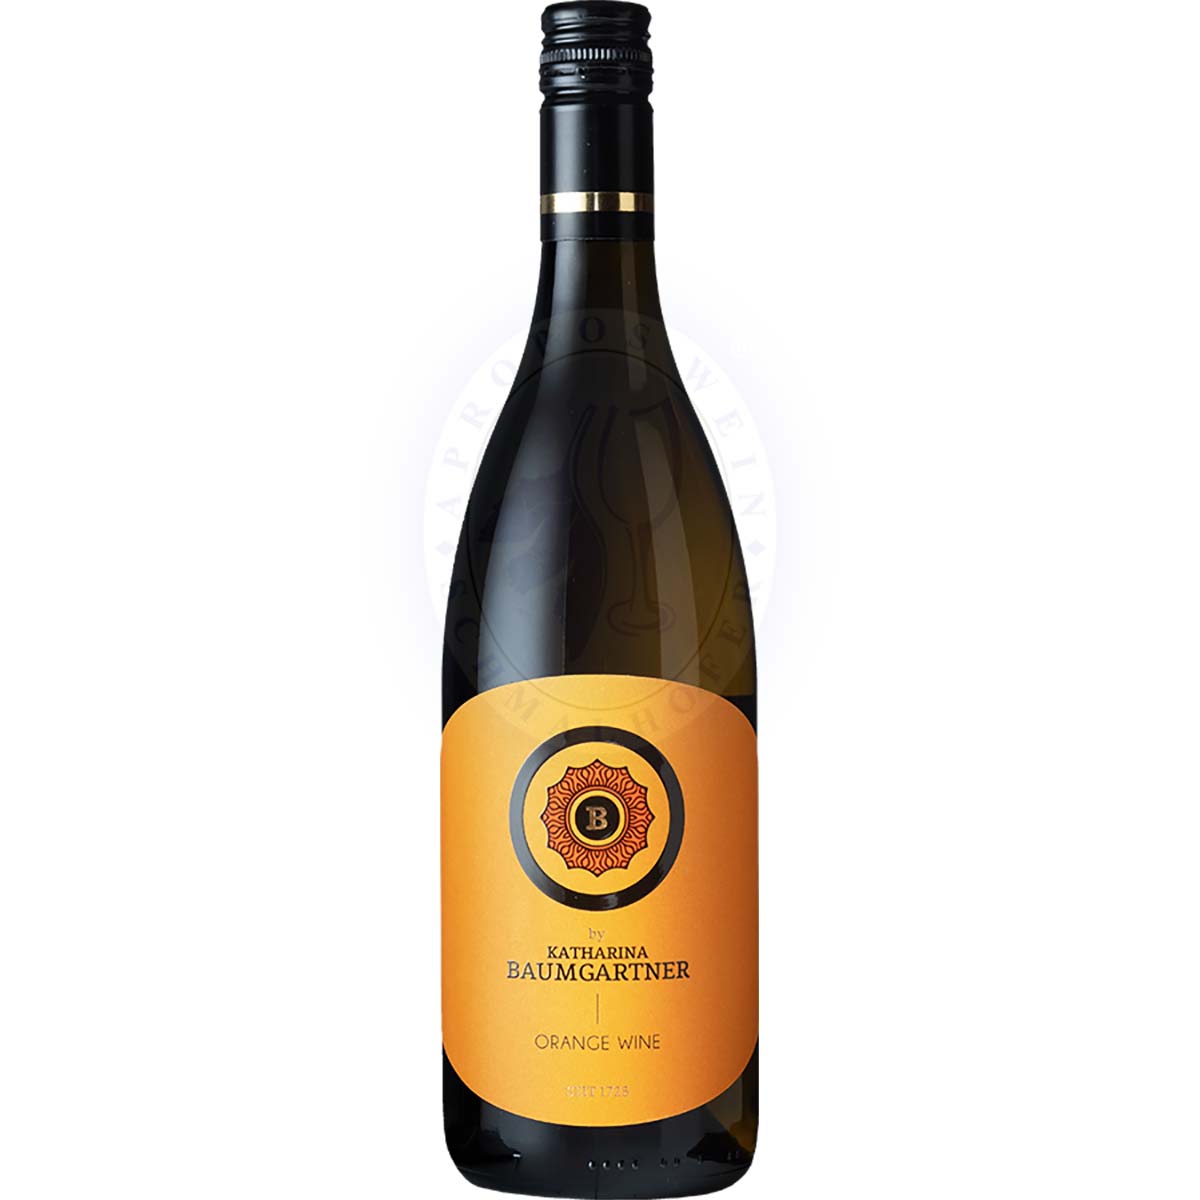 Baumgartner Grüner Veltliner Orange Wine Katharina 2020 0,75l